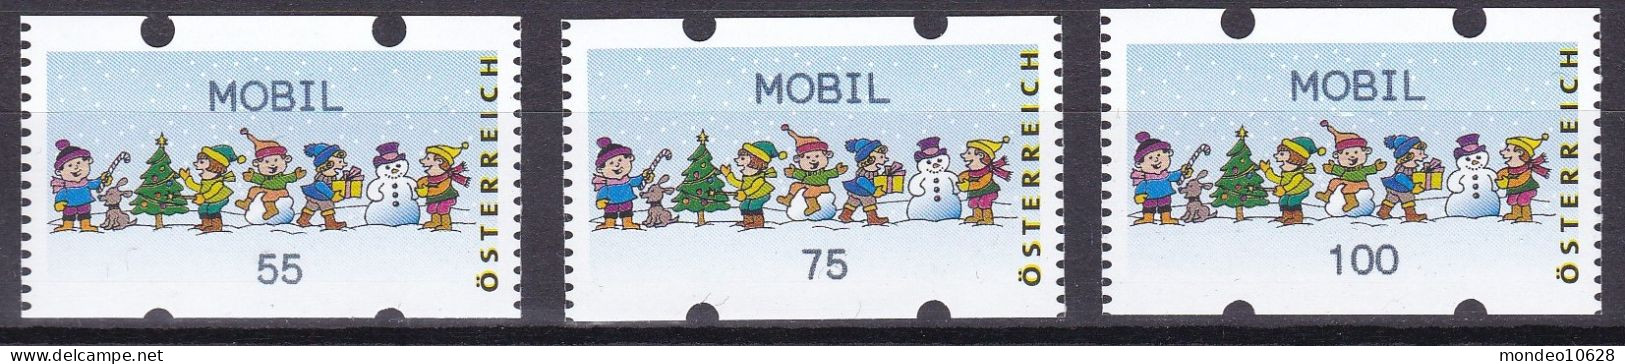 ATM Österreich - Ausgabe 24.11.2006 - Mobil - Kinder - Mit Zählnummern - Postfrisch (20) - Machine Labels [ATM]